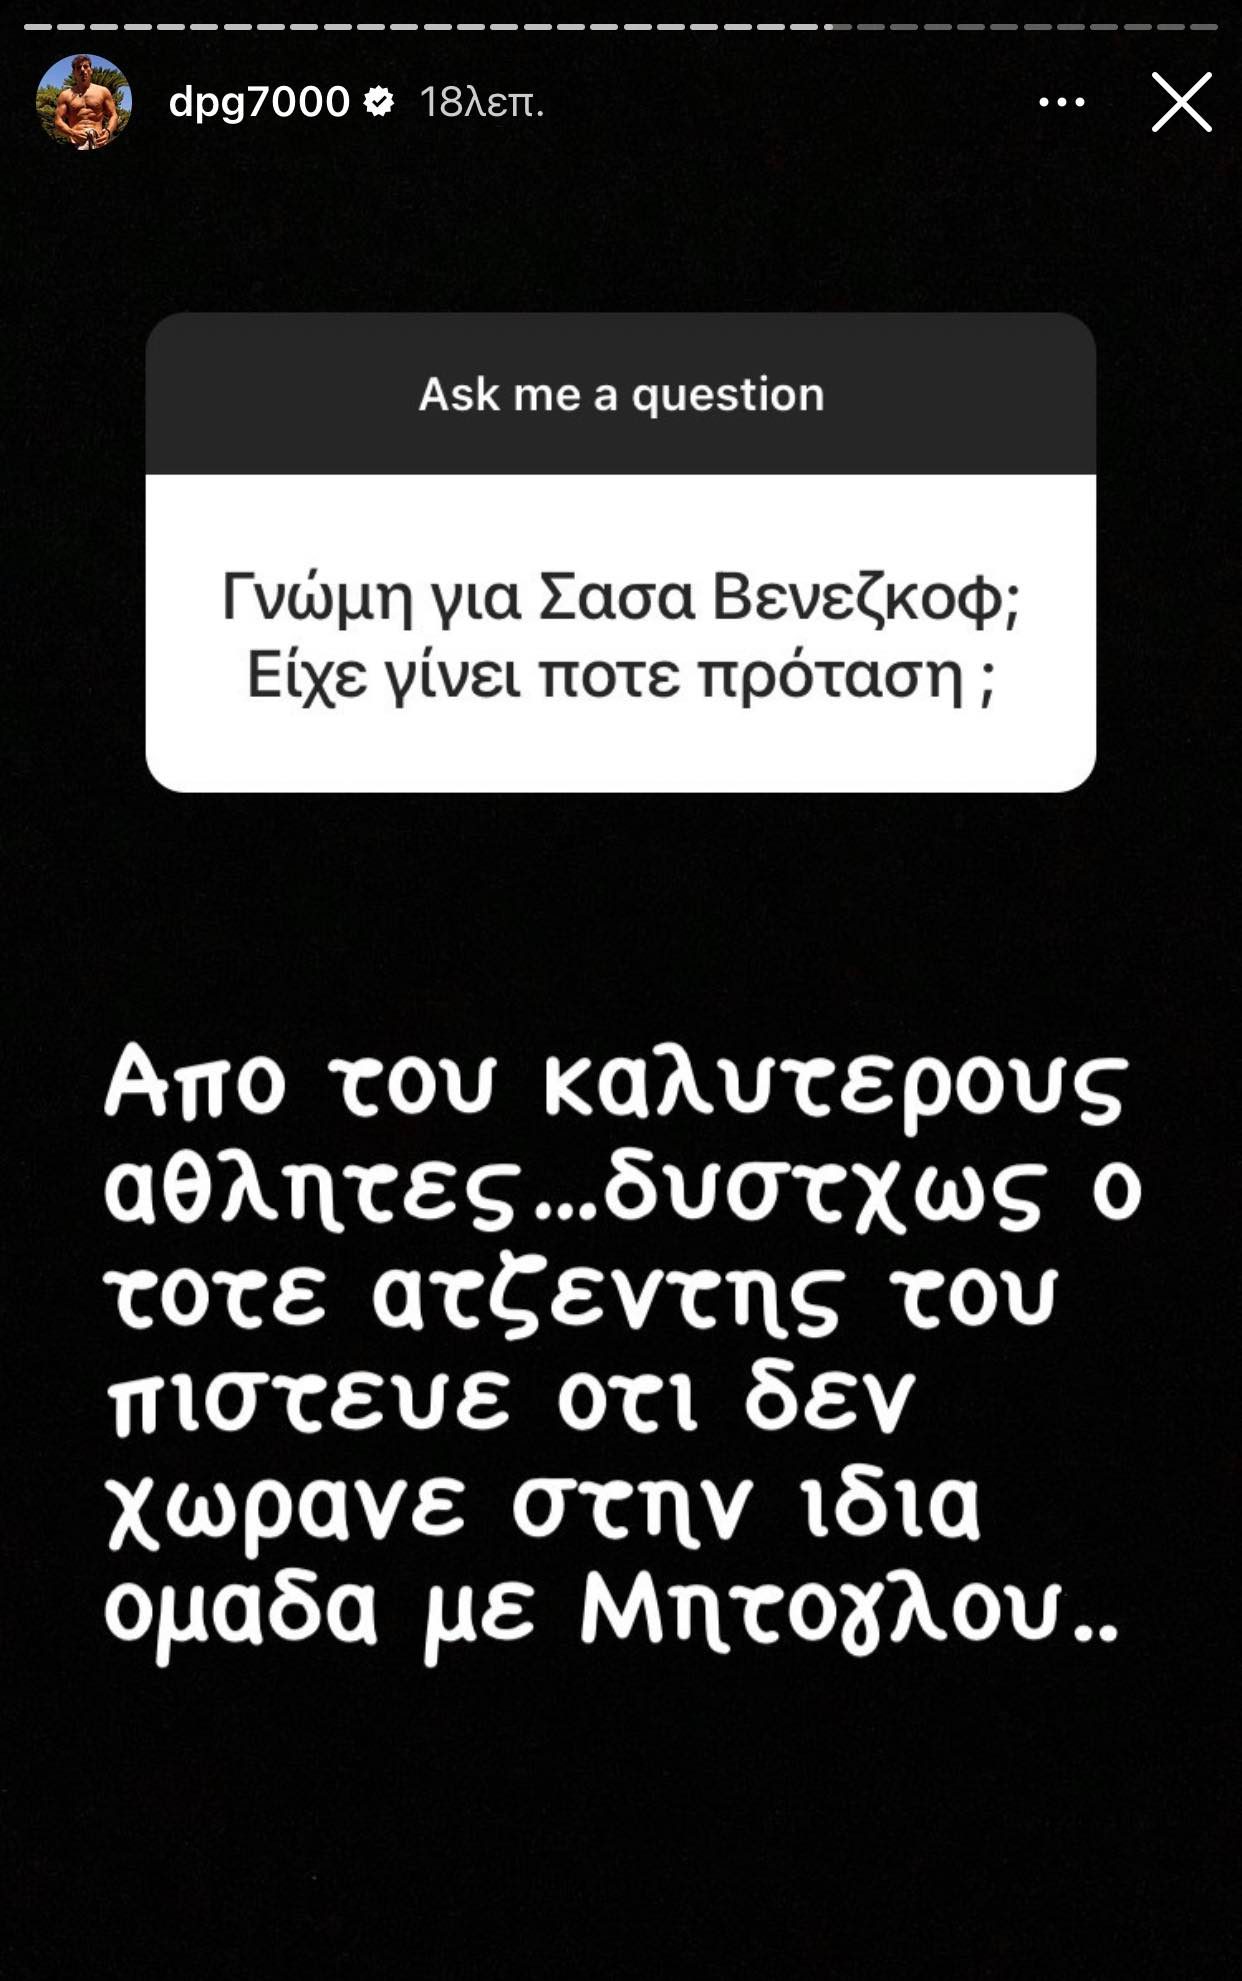 Γιαννακόπουλος για Βεζένκοφ: «Ο ατζέντης του πίστευε πως δεν χωράει μαζί με Μήτογλου στον Παναθηναϊκό» (pic)